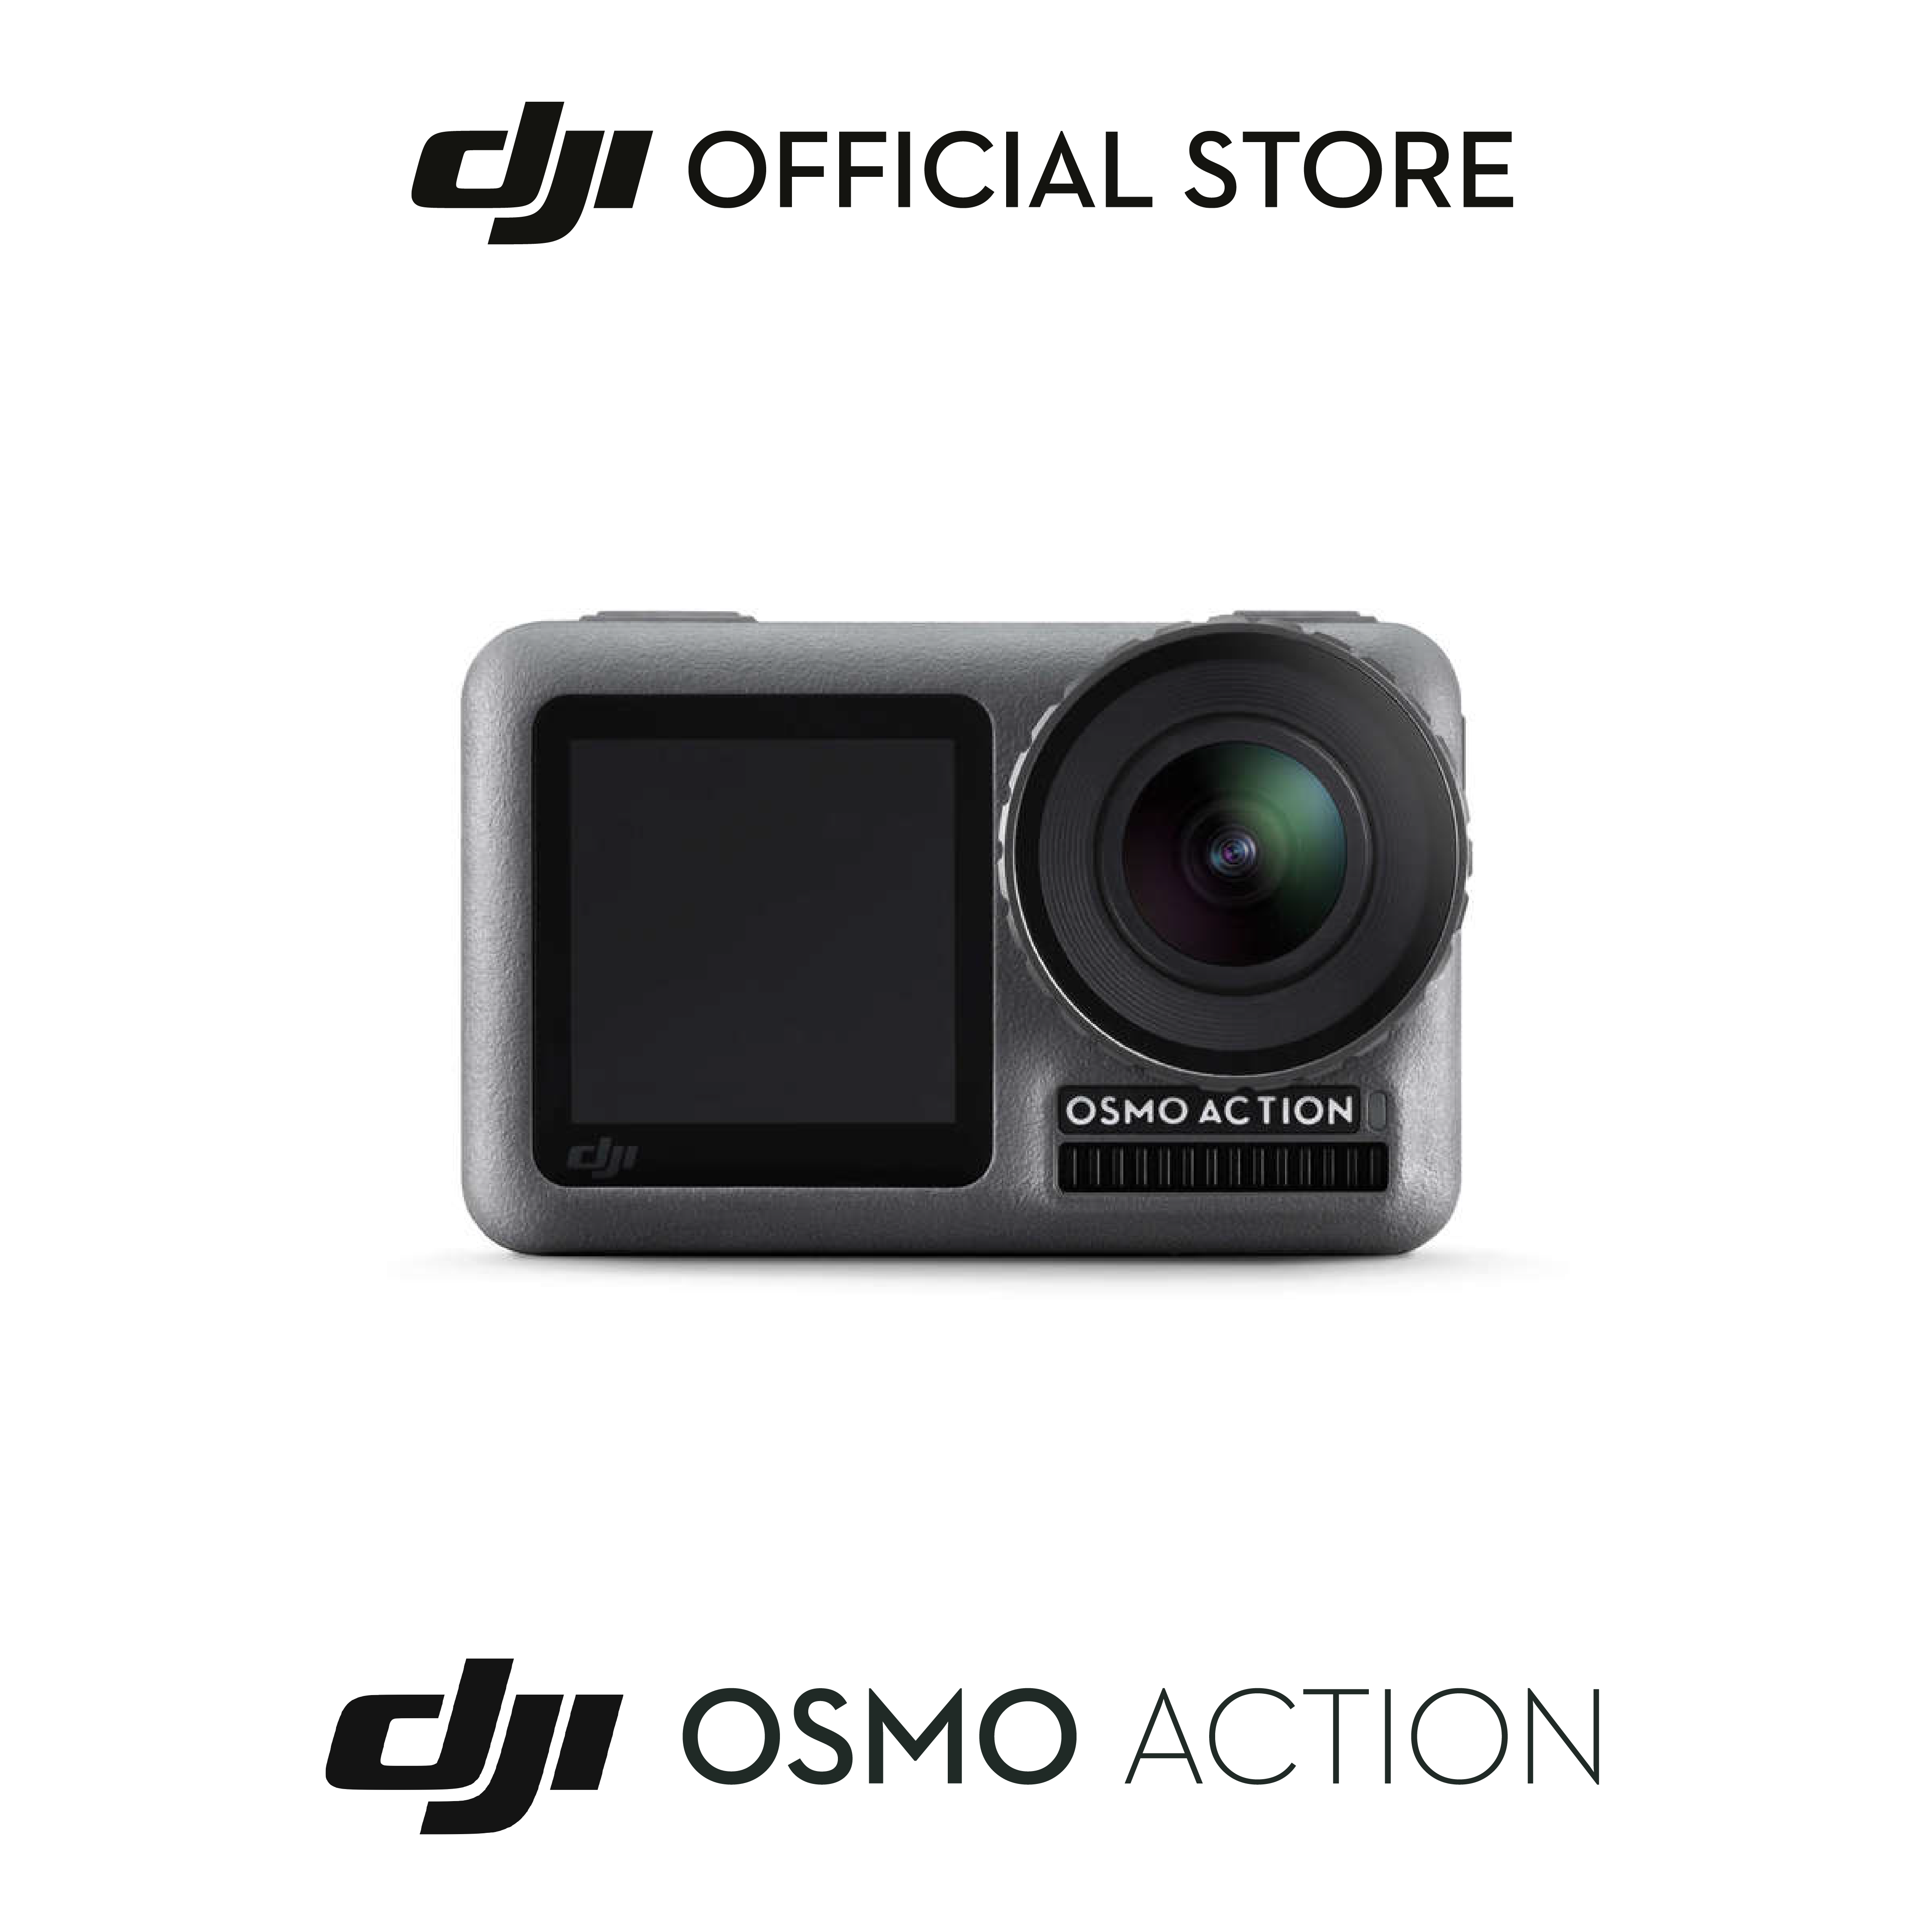 ภาพประกอบของ DJI OSMO ACTION และ ACTION 2 ออสโม เเอคชั่น เเคม 2หน้าจอหน้าและหลัง เก็บทุกโมเมนต์ ดำน้ำได้ กล้องชัด4K บันทึกภาพไม่ส